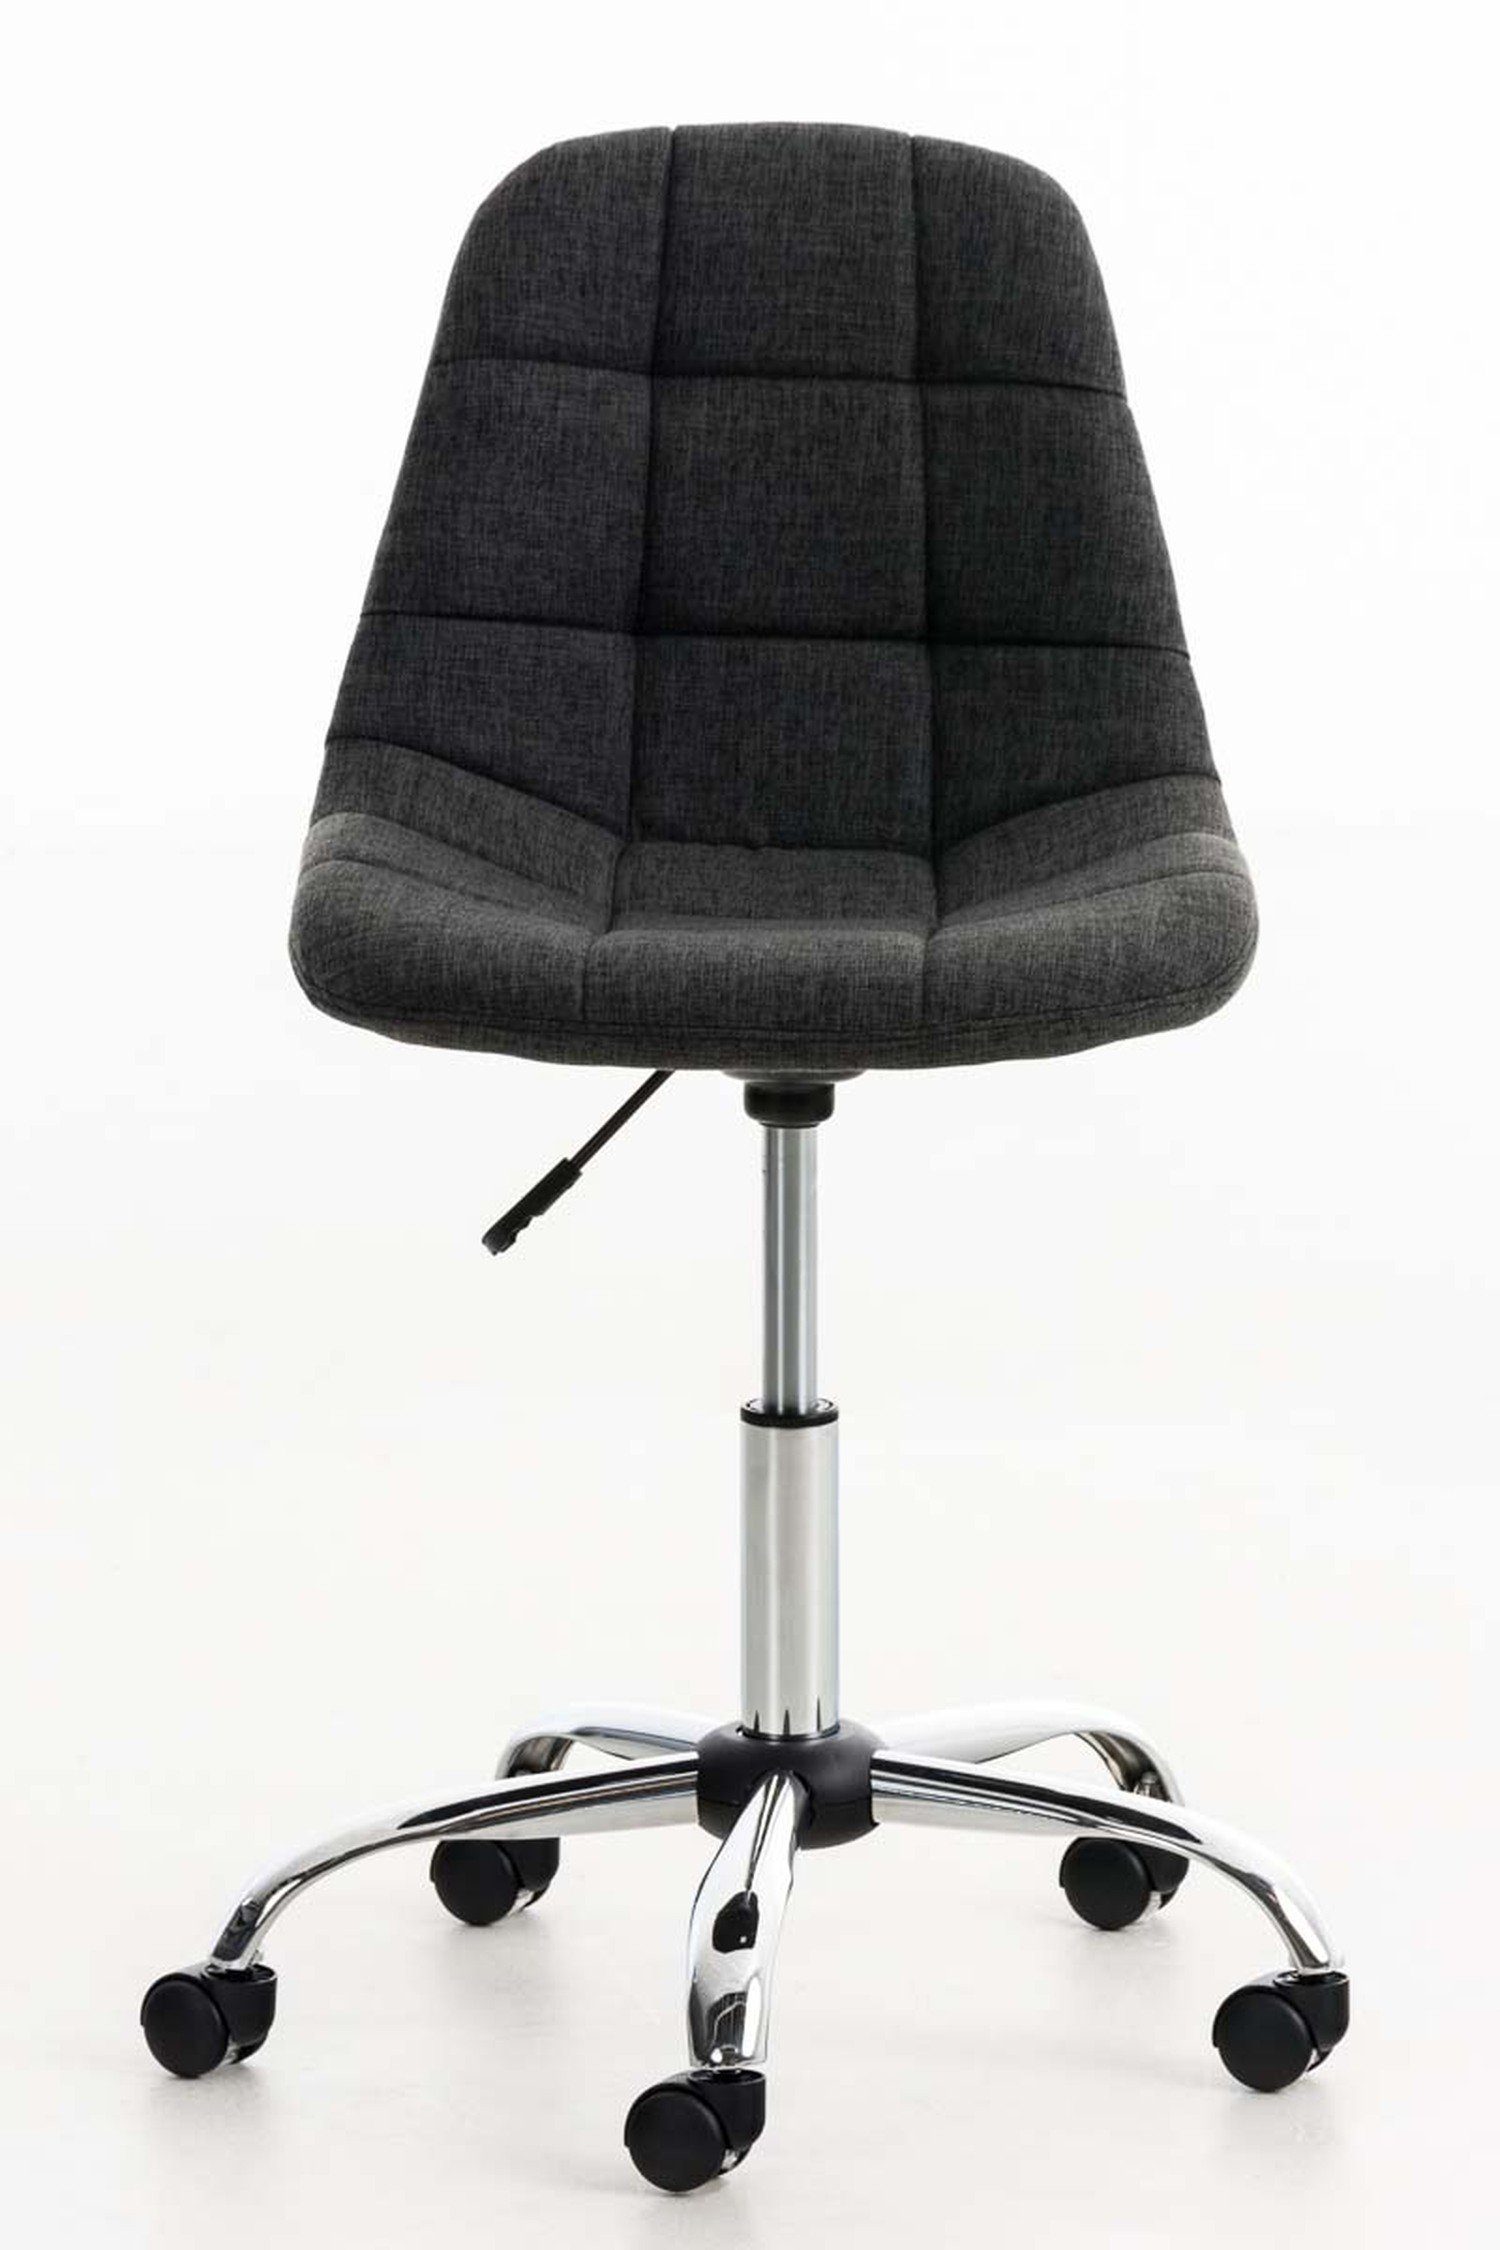 Stoff TPFLiving Sitzfläche: mit drehbar 360° Gestell: Chefsessel, (Schreibtischstuhl, - Drehstuhl, Bürostuhl bequemer Rückenlehne Konferenzstuhl), - Metall Emily dunkelgrau chrom höhenverstellbar und